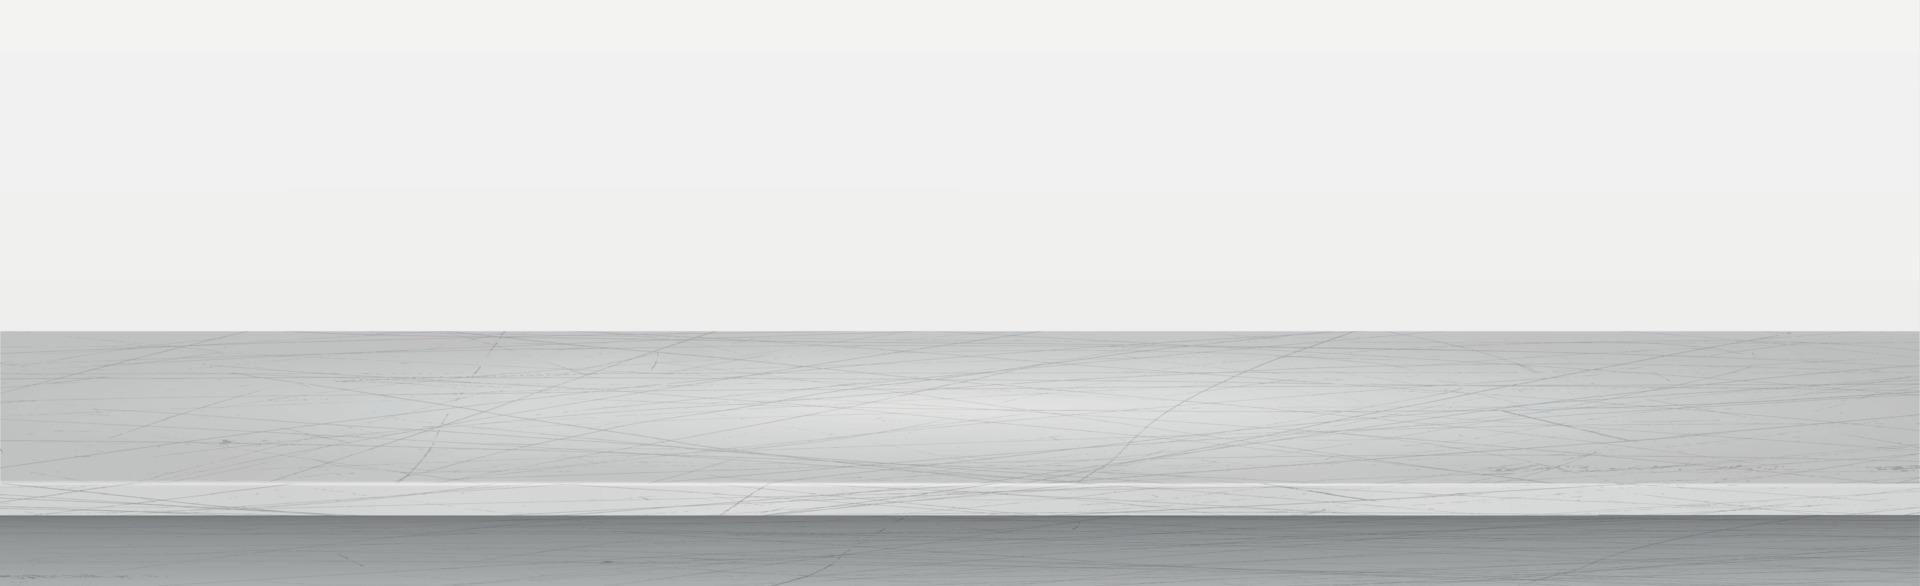 grijze betonnen stenen aanrecht op witte panoramische achtergrond, promotionele websjabloon - vector